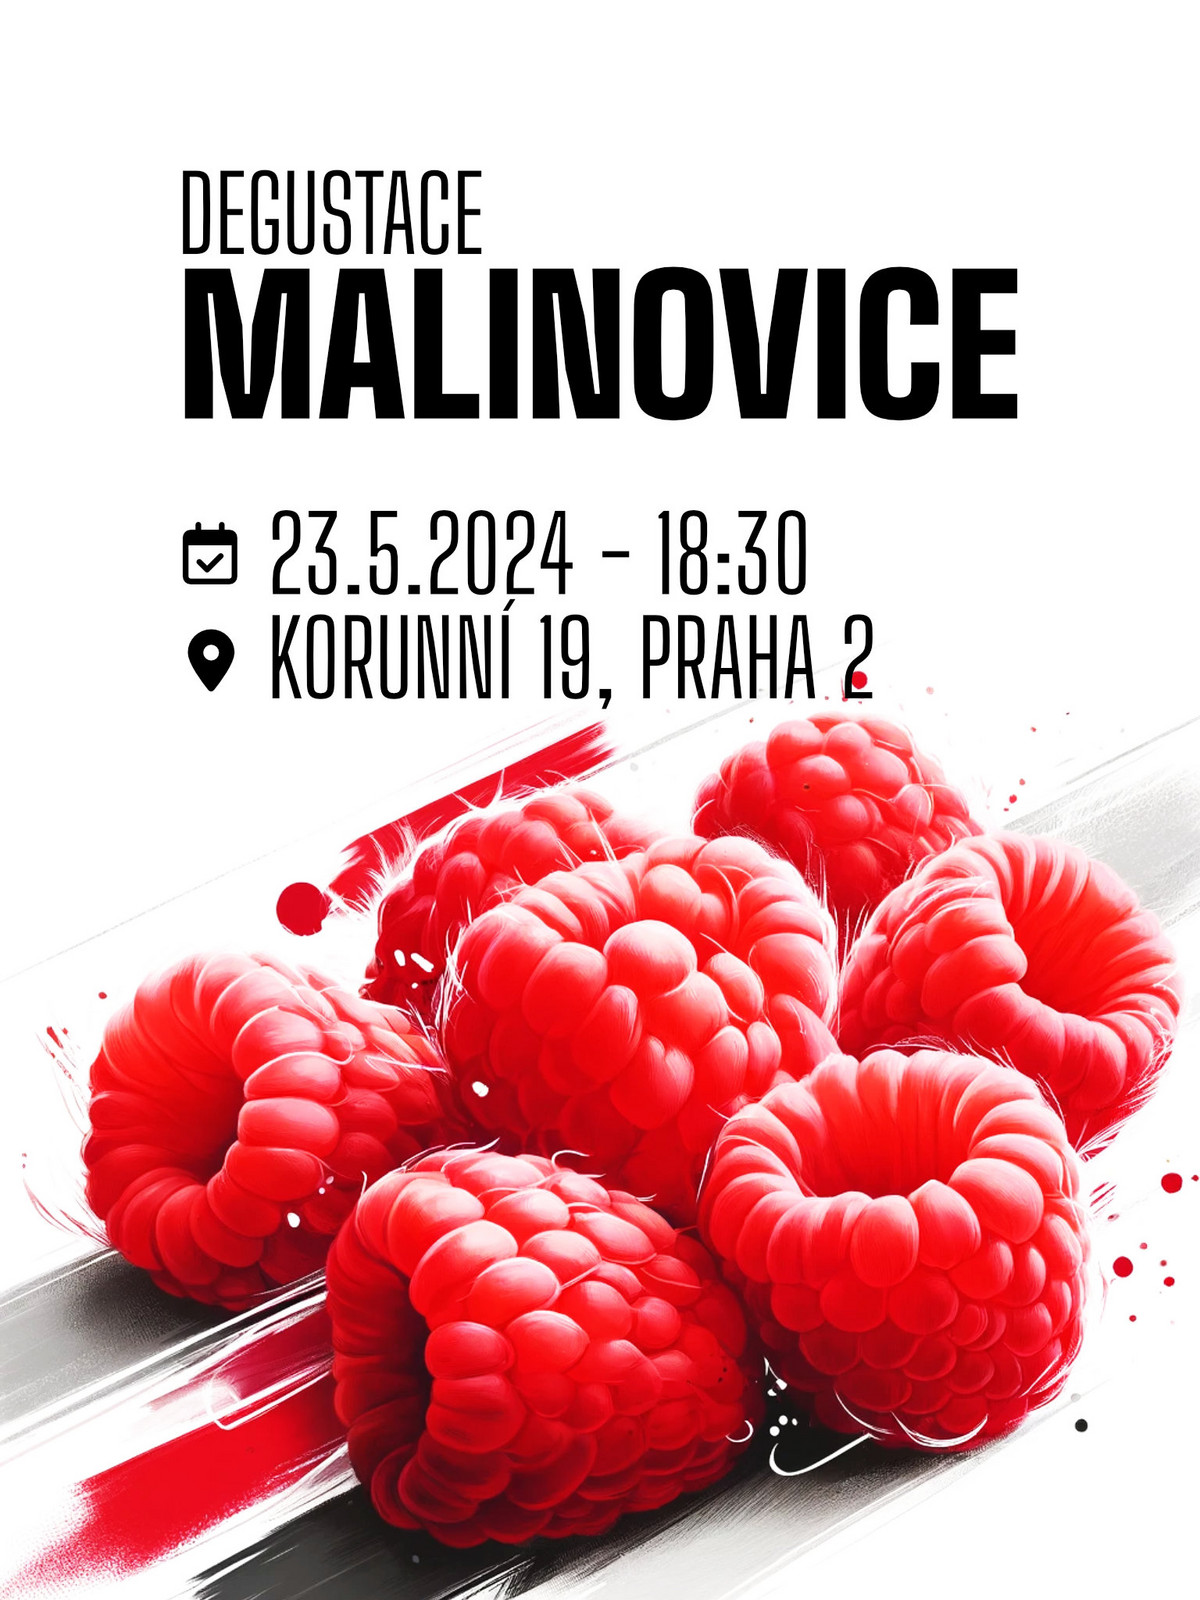 Lihovarek.cz  23|5 - Degustace Malinovice